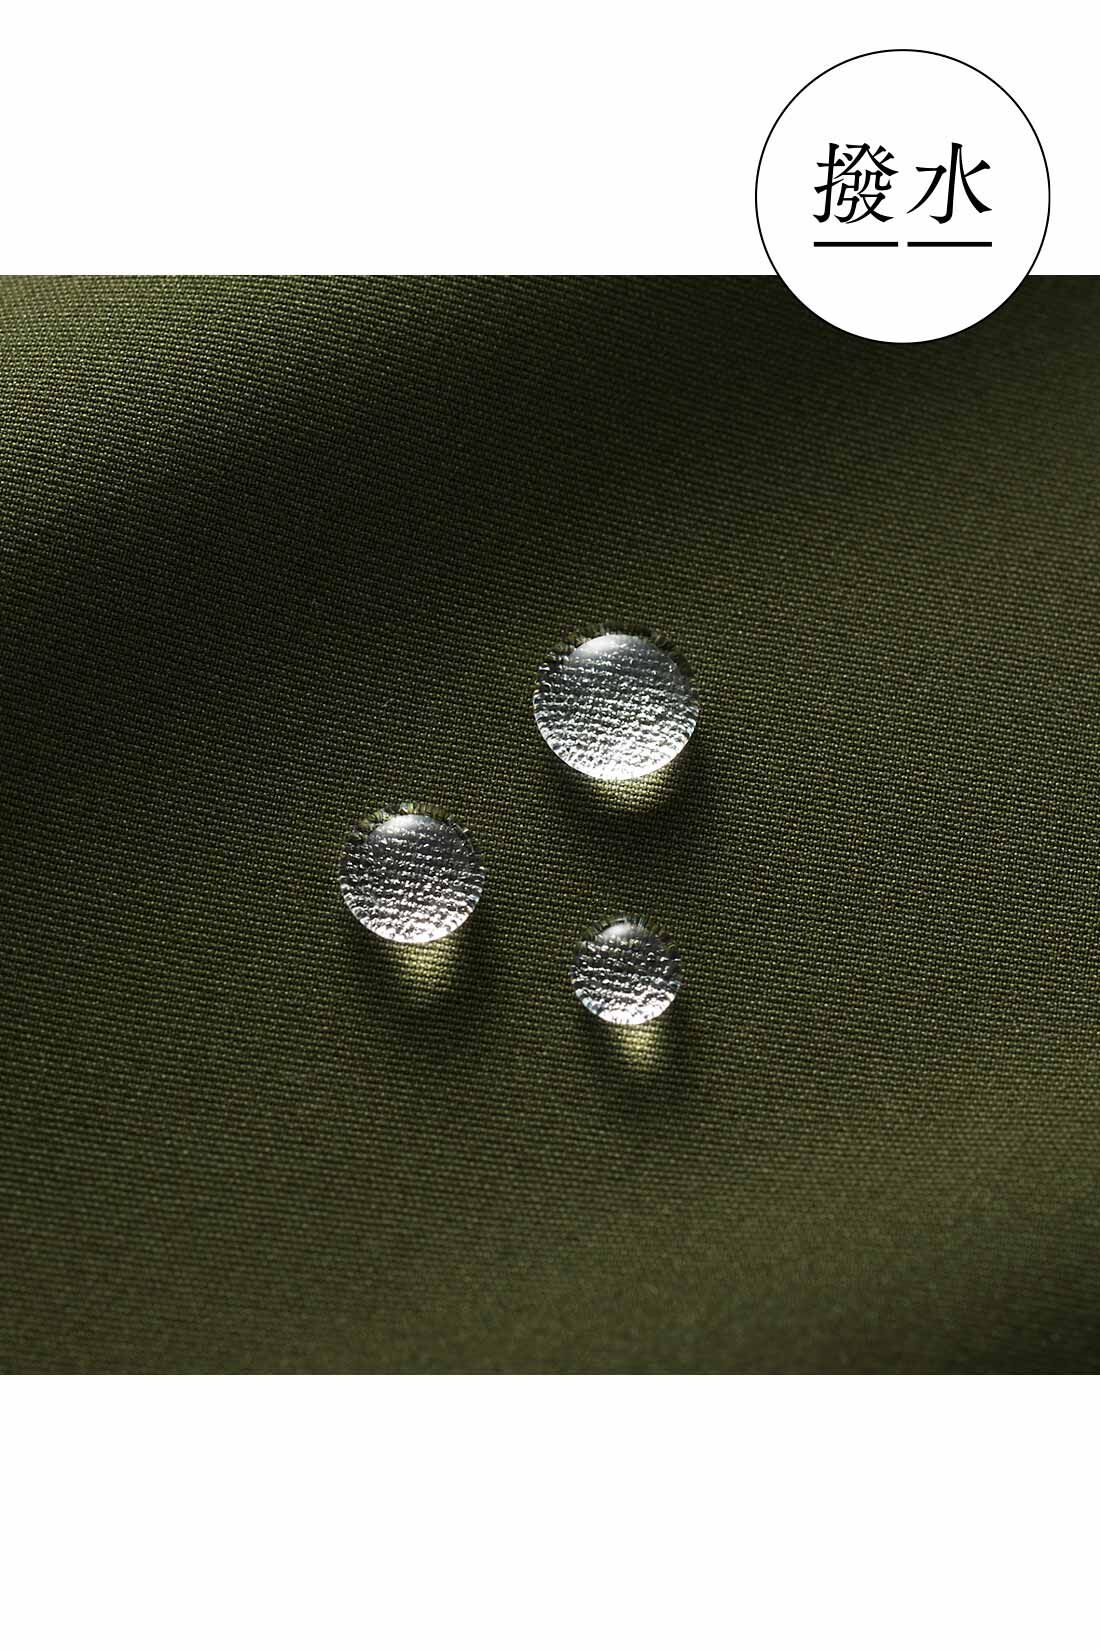 IEDIT[イディット]　WOODS コラボ 撥水（はっすい）フレアーカーゴスカート|マットでなめらかなポリエステル素材。急な雨でもあわてない撥水（はっすい）機能付き。